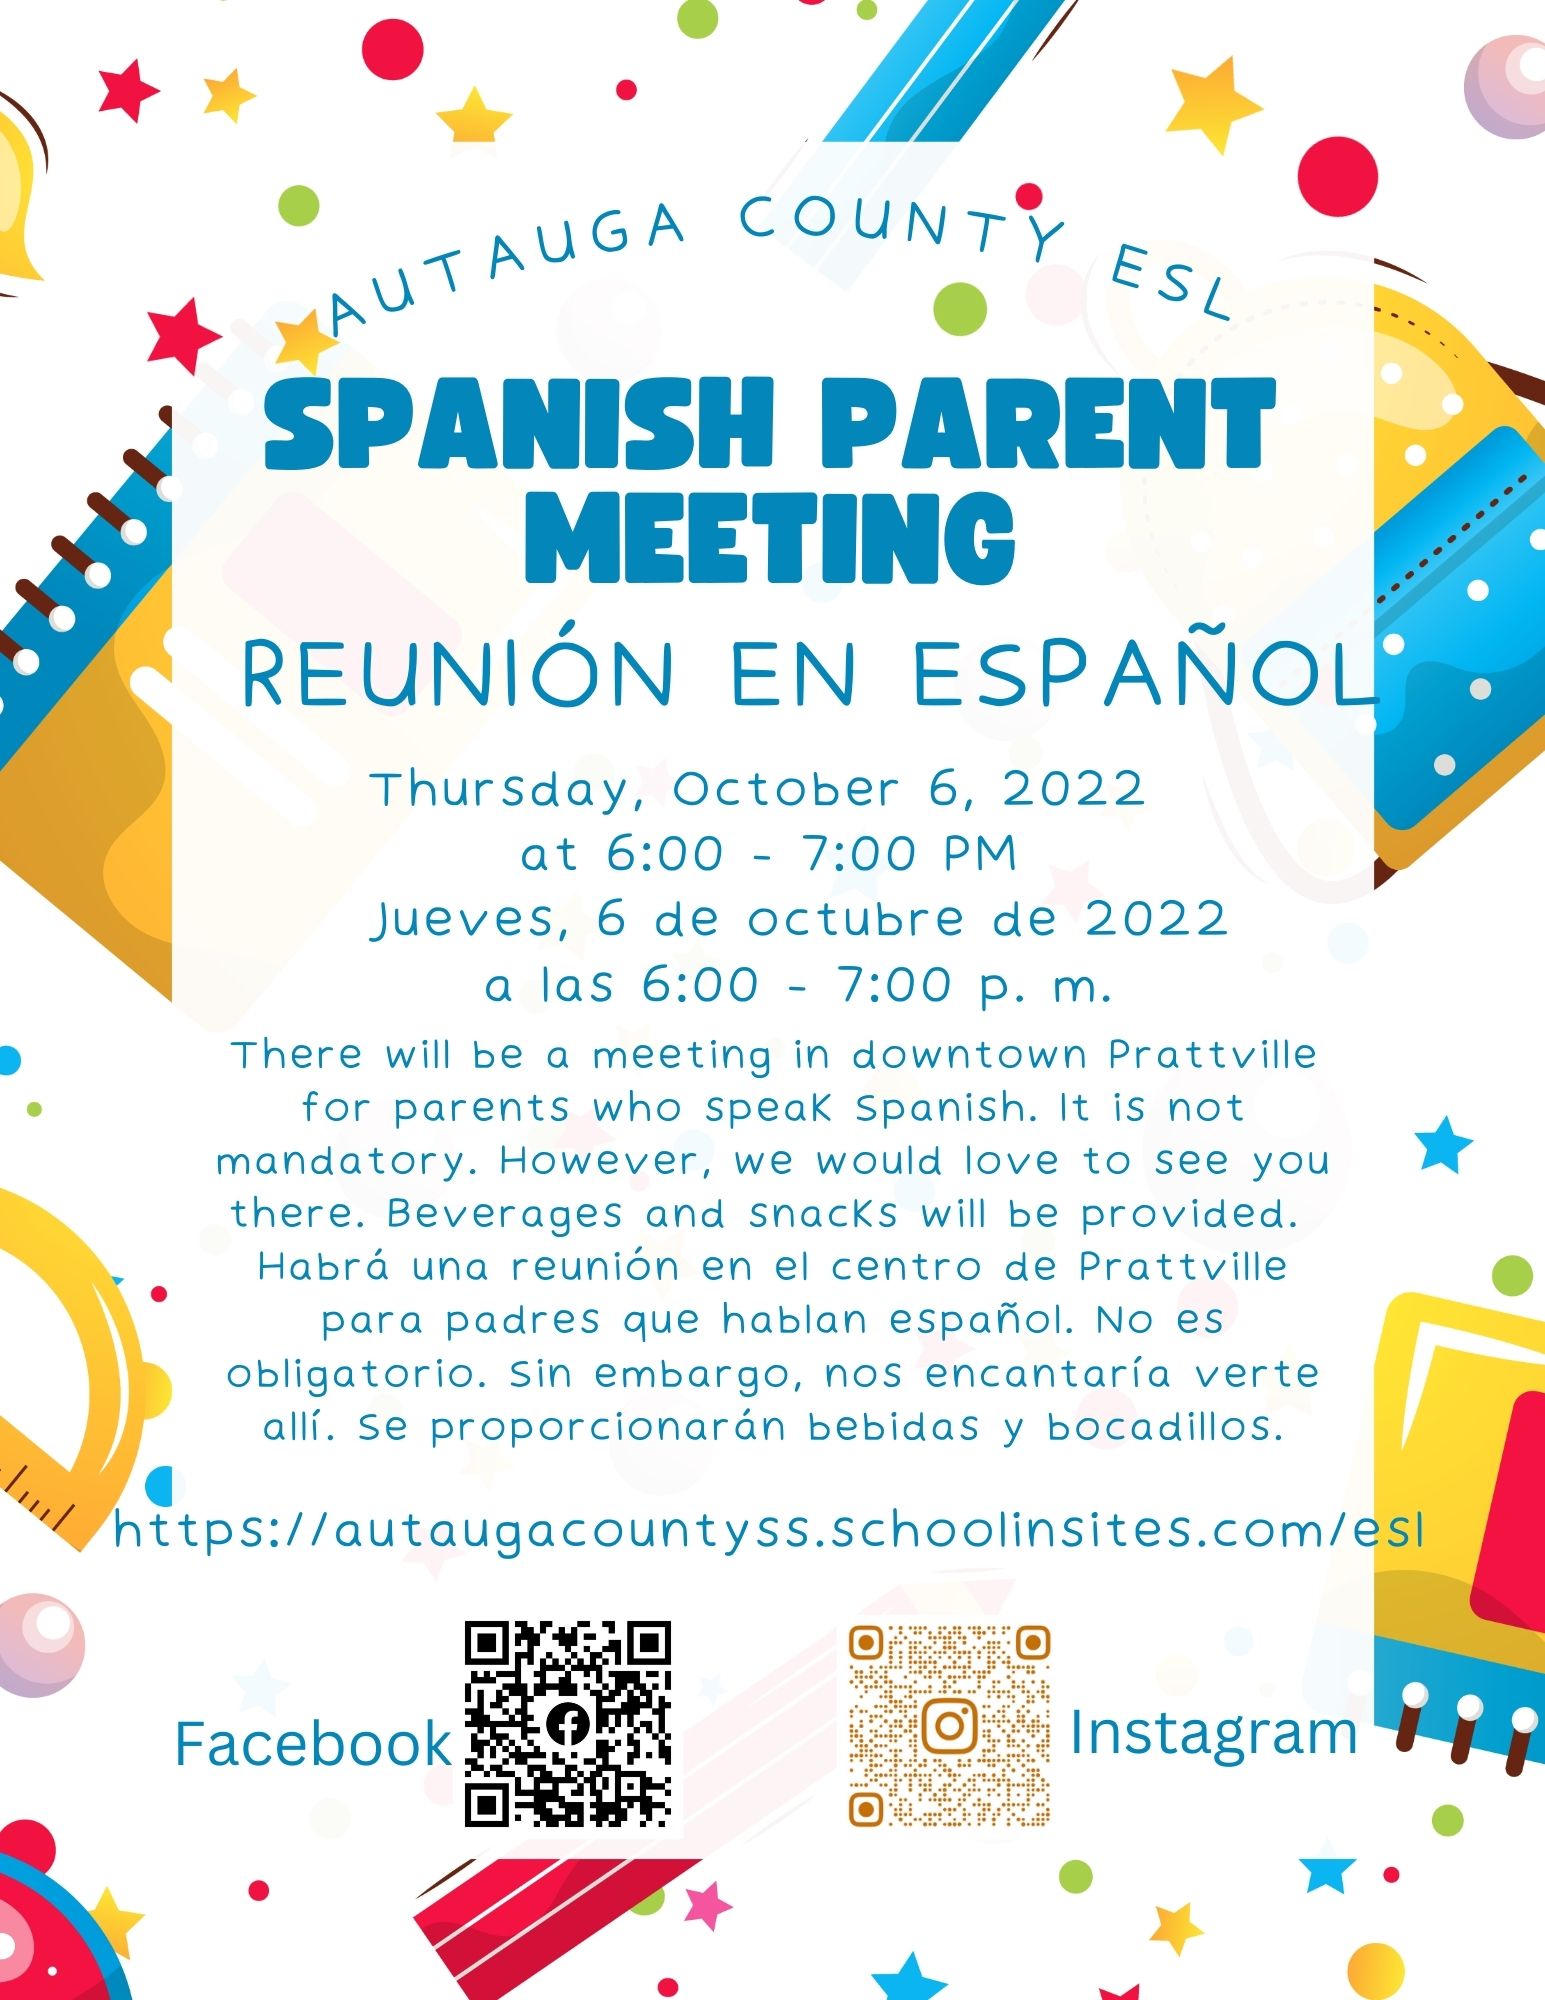 Spanish Parent Meeting Invitation